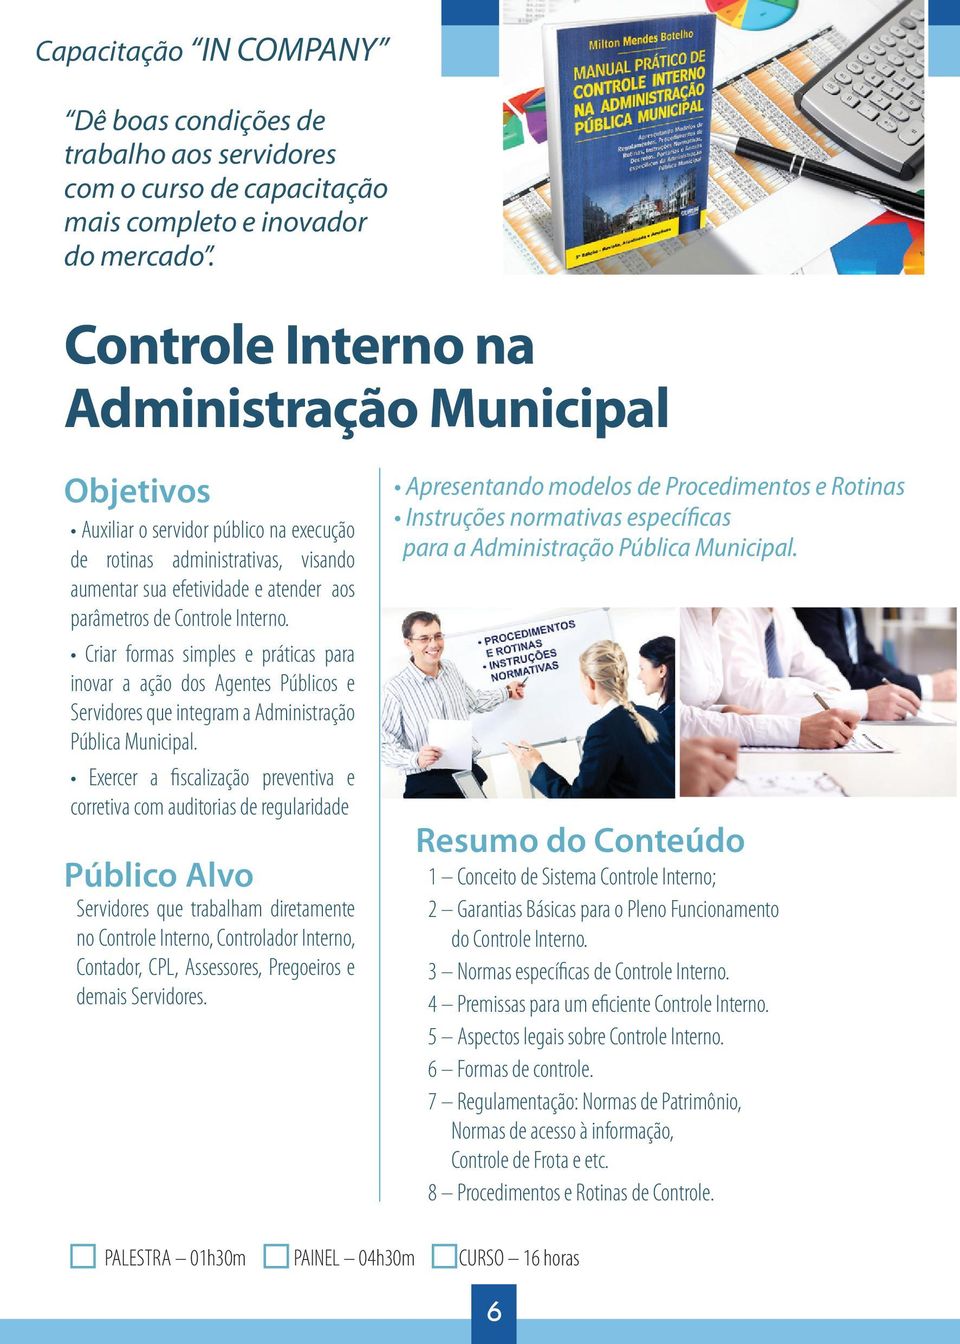 Criar formas simples e práticas para inovar a ação dos Agentes Públicos e Servidores que integram a Administração Pública Municipal.